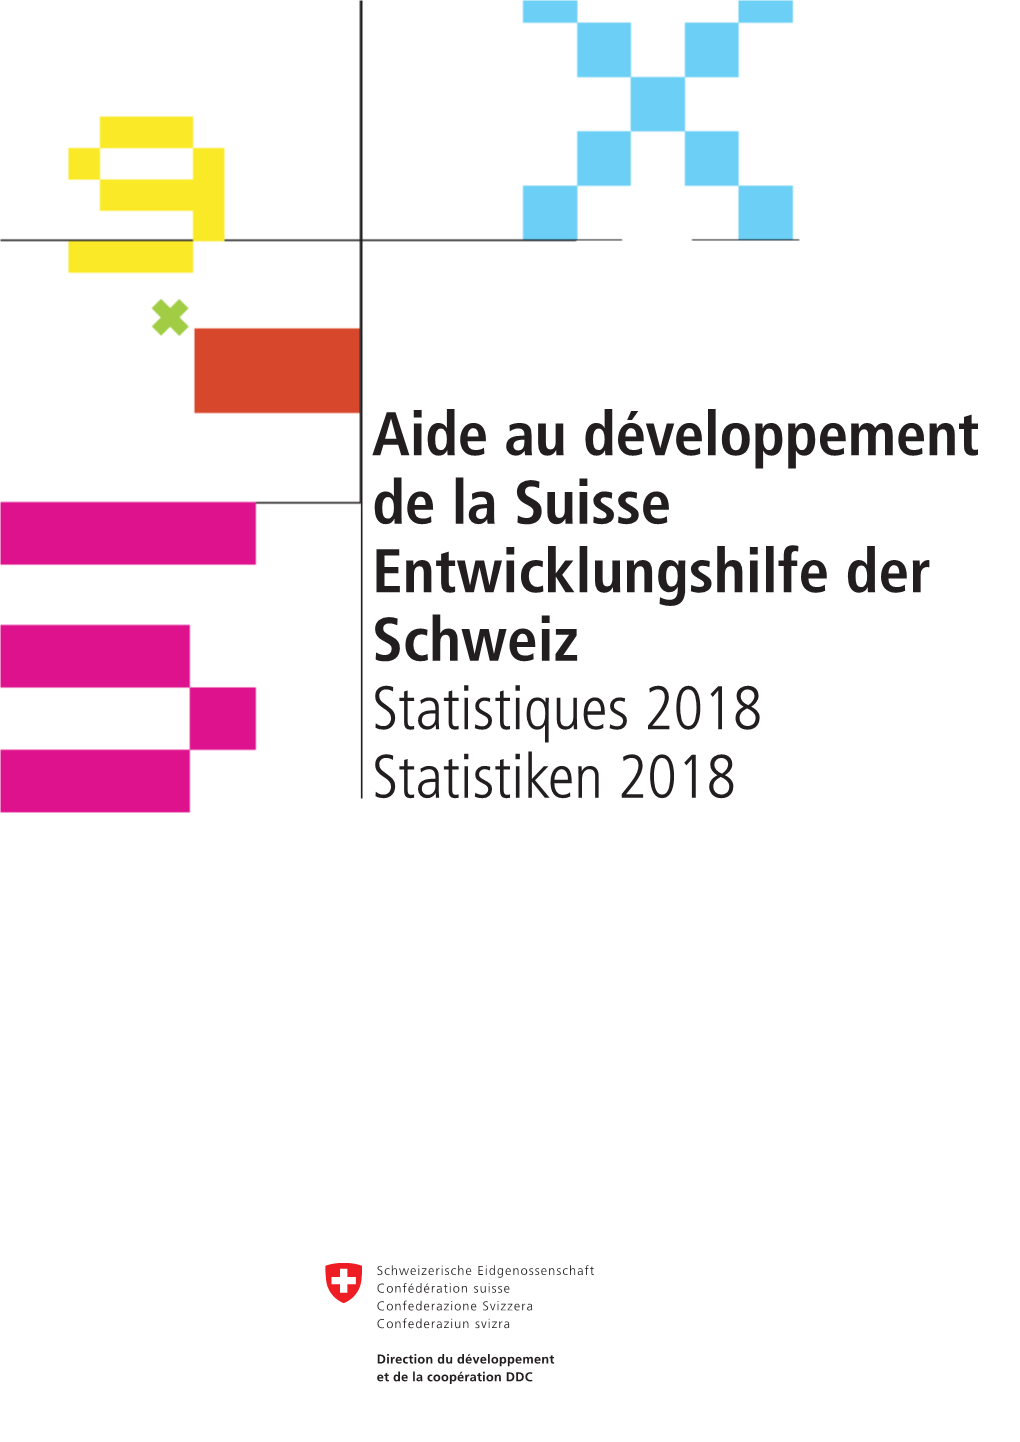 Aide Au Développement De La Suisse, Statistiques 2018